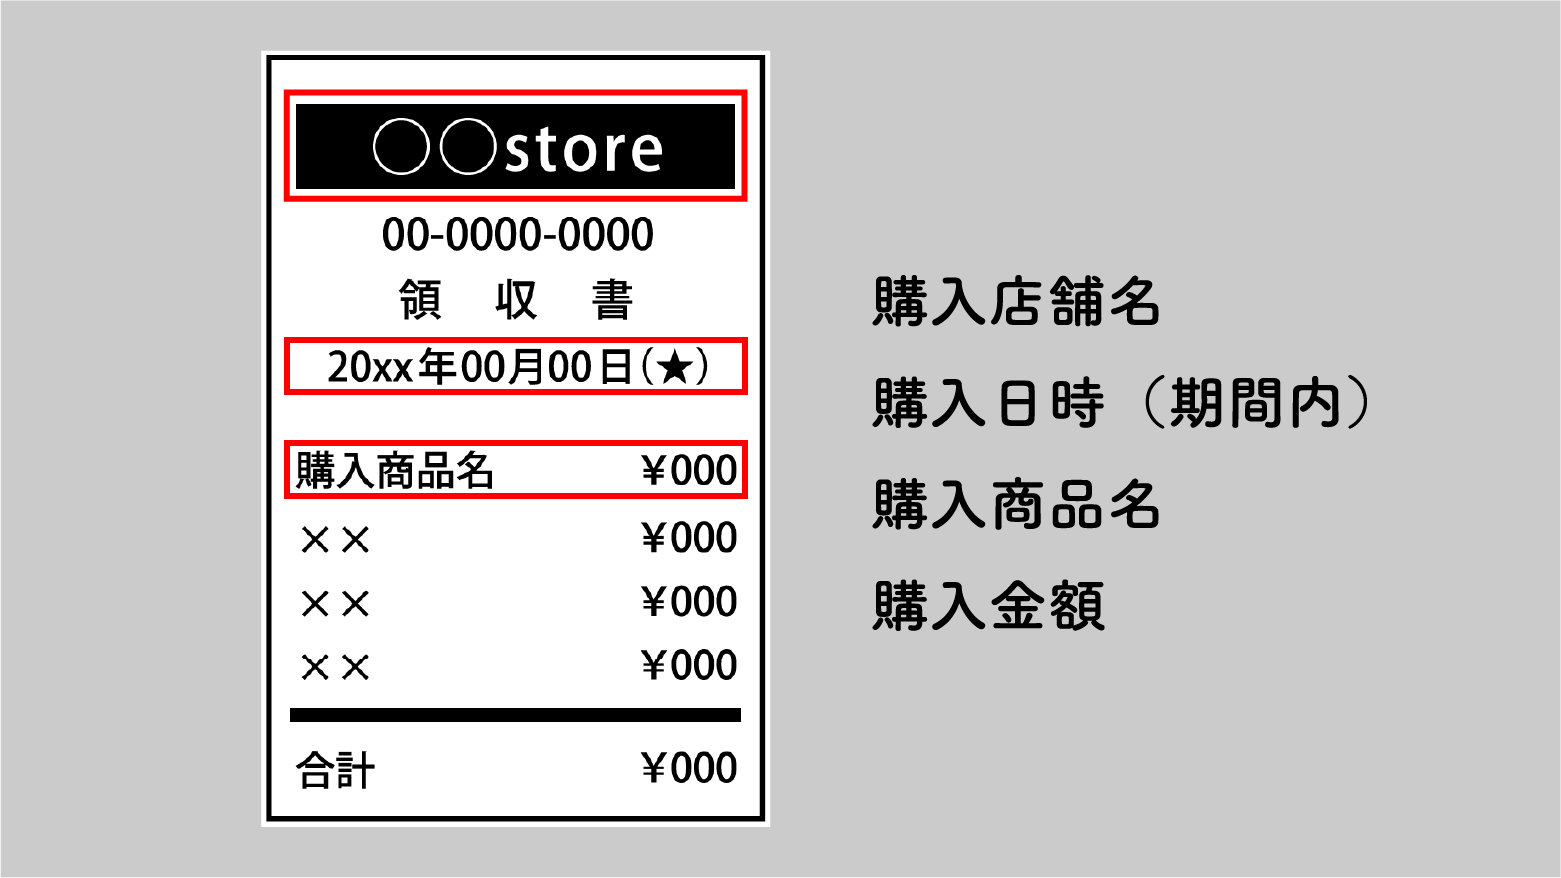 レシートは、購入店舗名、購入日時（期間内）、購入商品名、購入金額がわかるように撮影